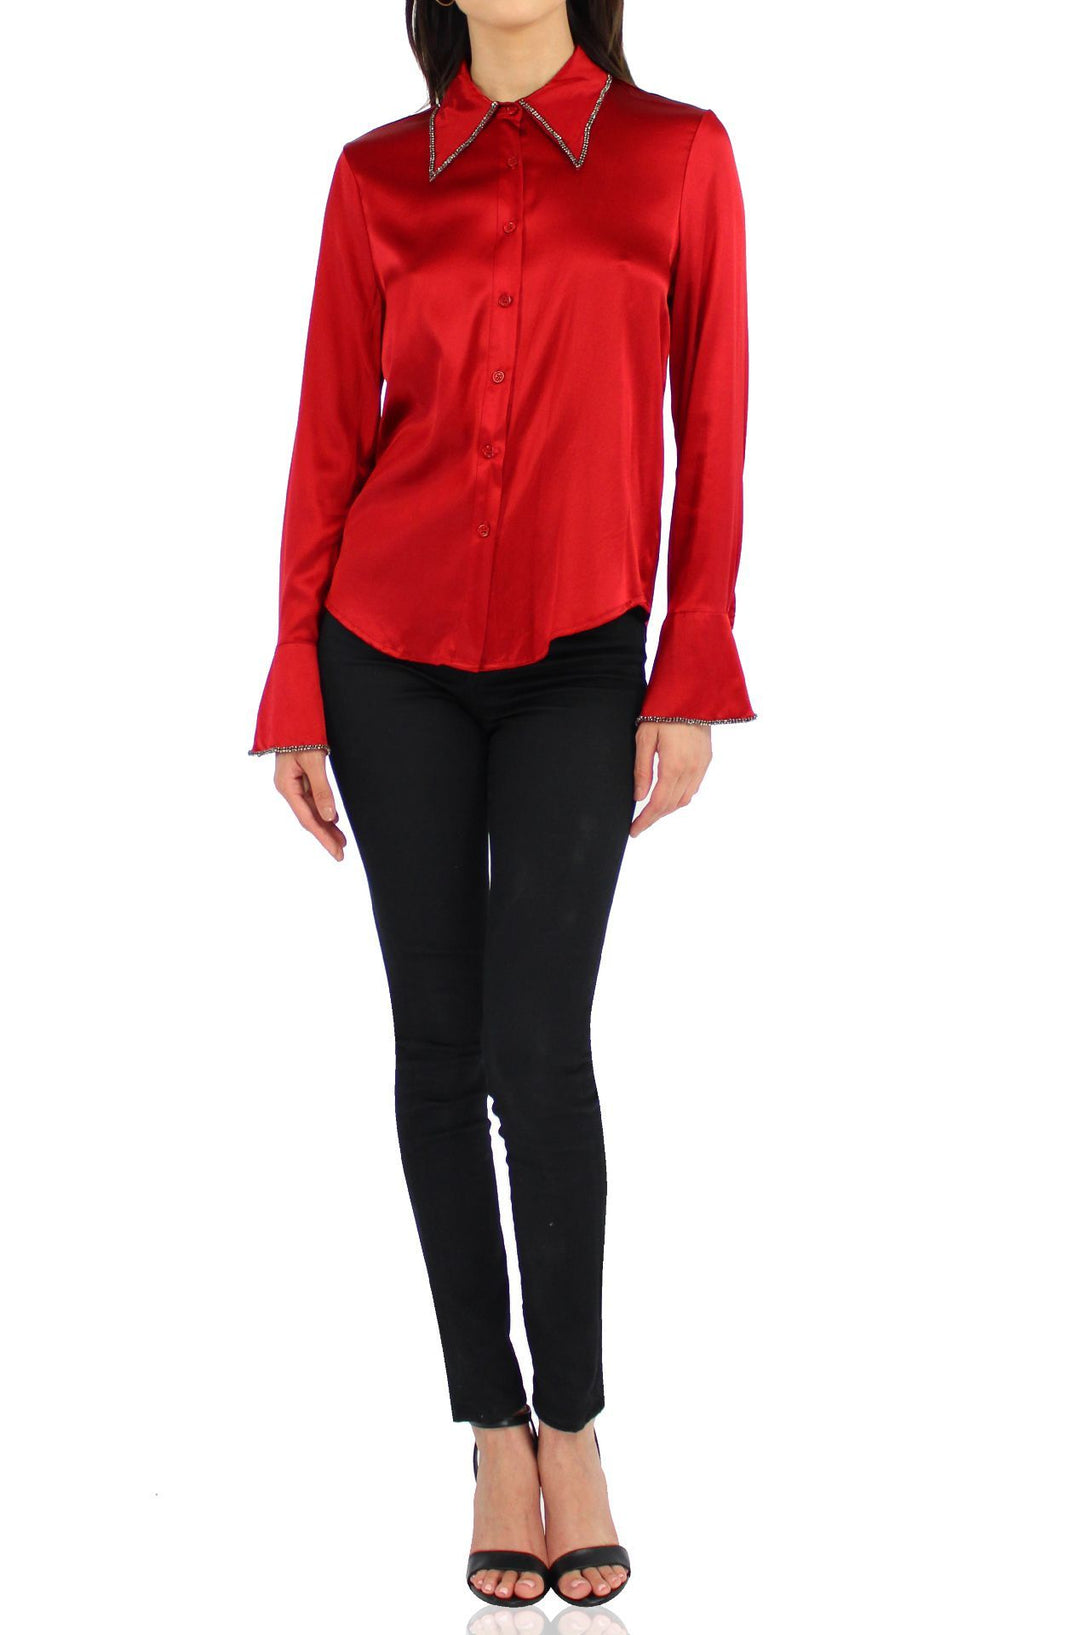 Silk-Designer-Buttondown-Shirt-In-Red-By-Kyle-Richard